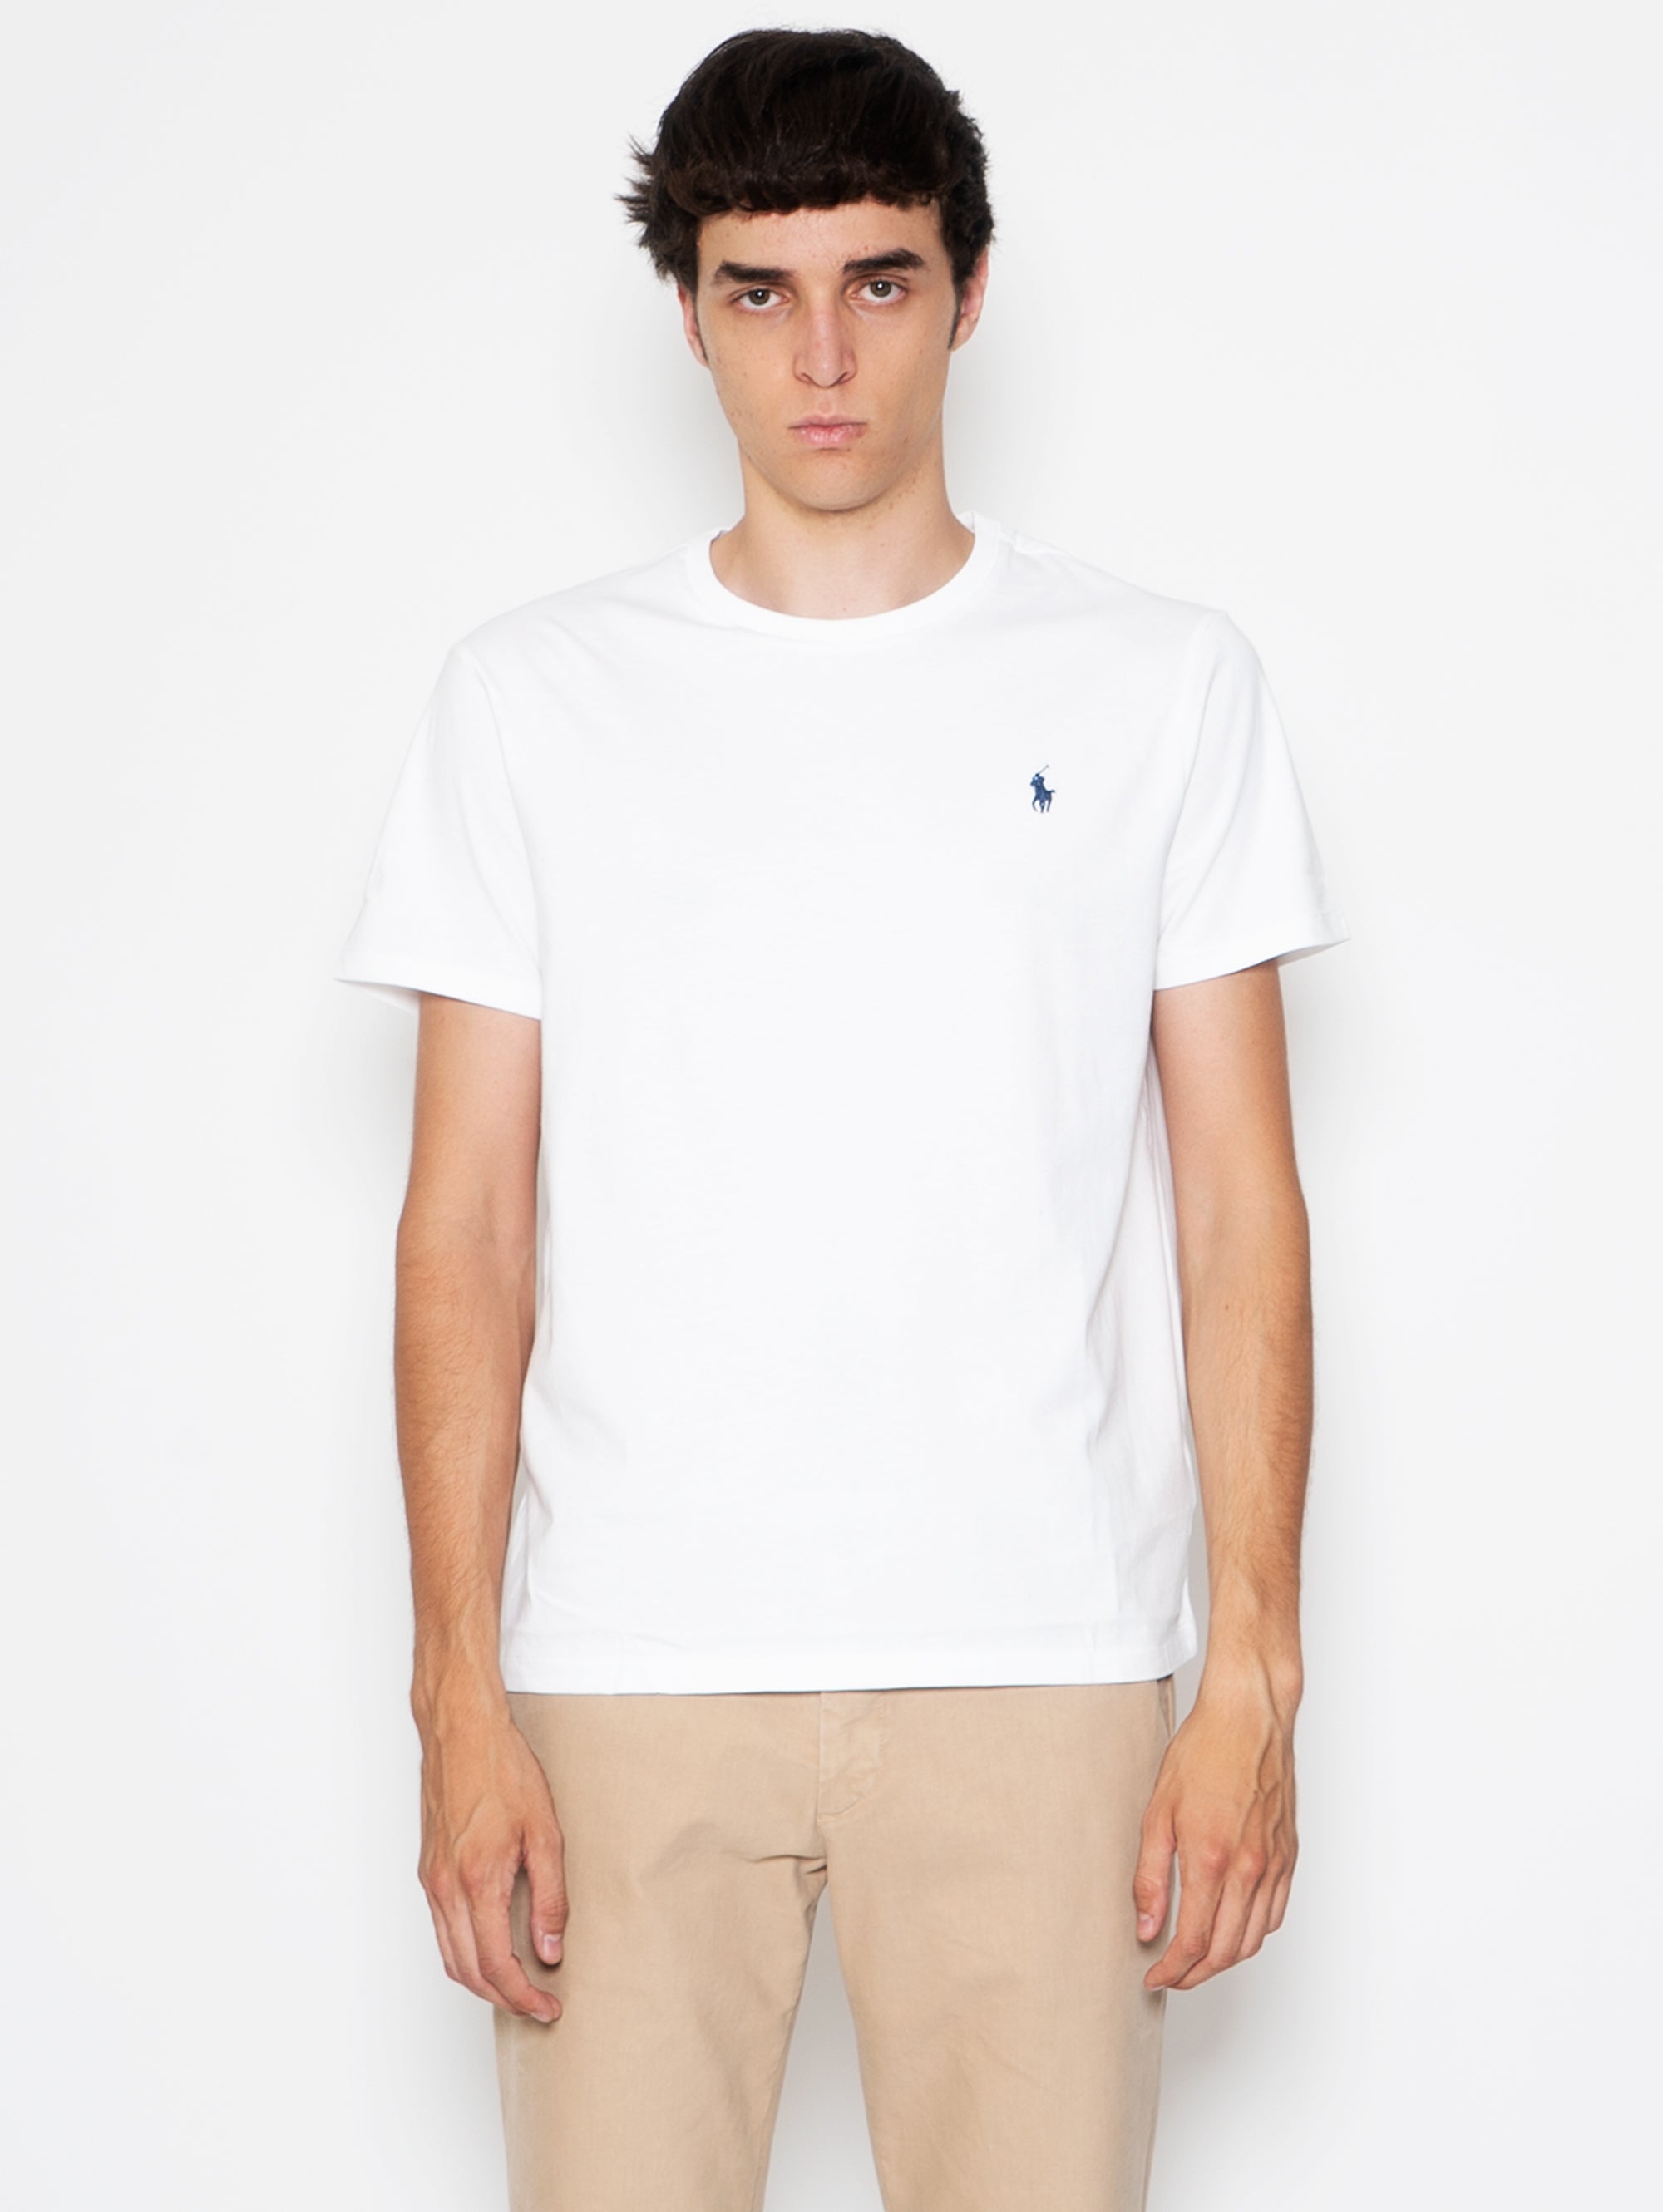 RALPH LAUREN-T-shirt Girocollo Bianco-TRYME Shop